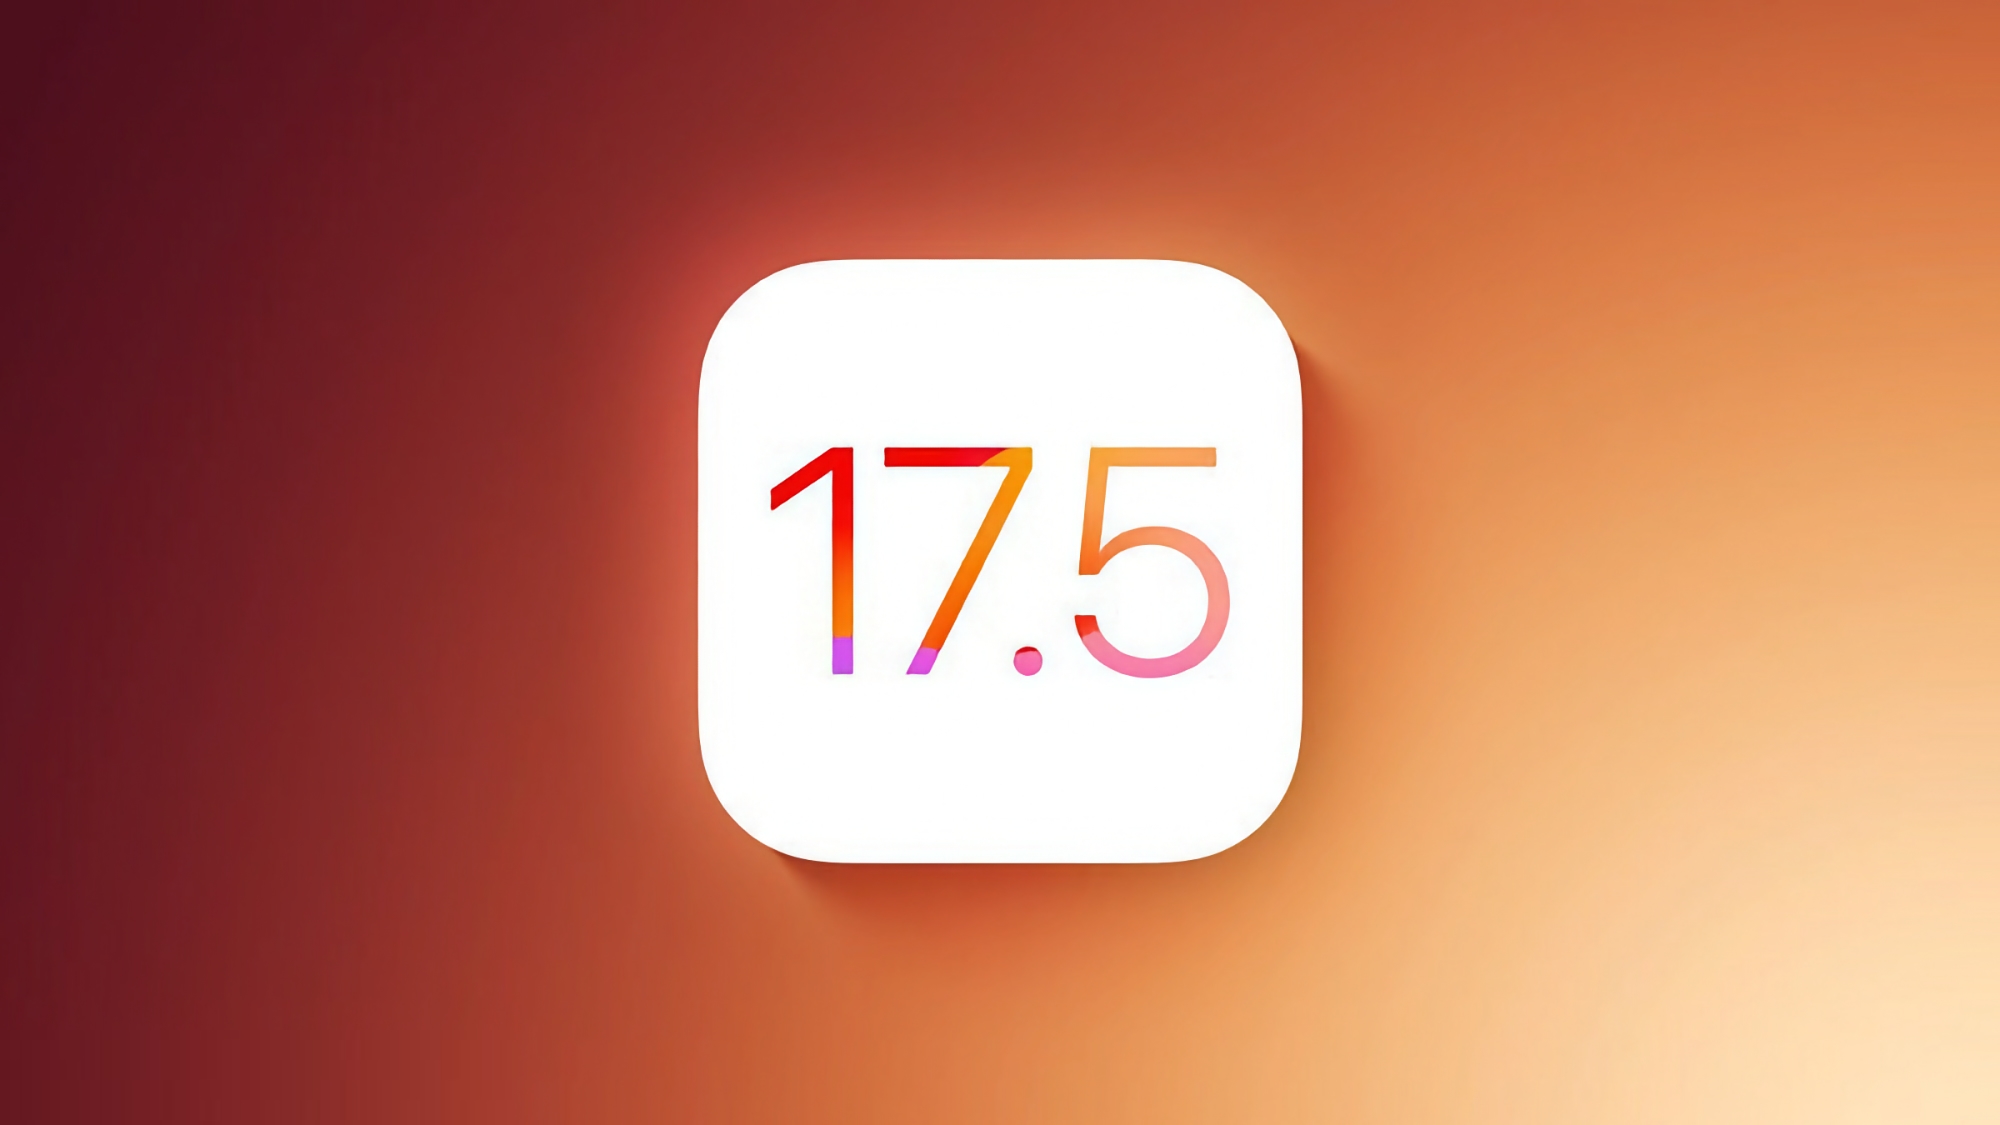 Apple udostępniło deweloperom nowe wersje beta systemów iOS 17.5 i iPadOS 17.5